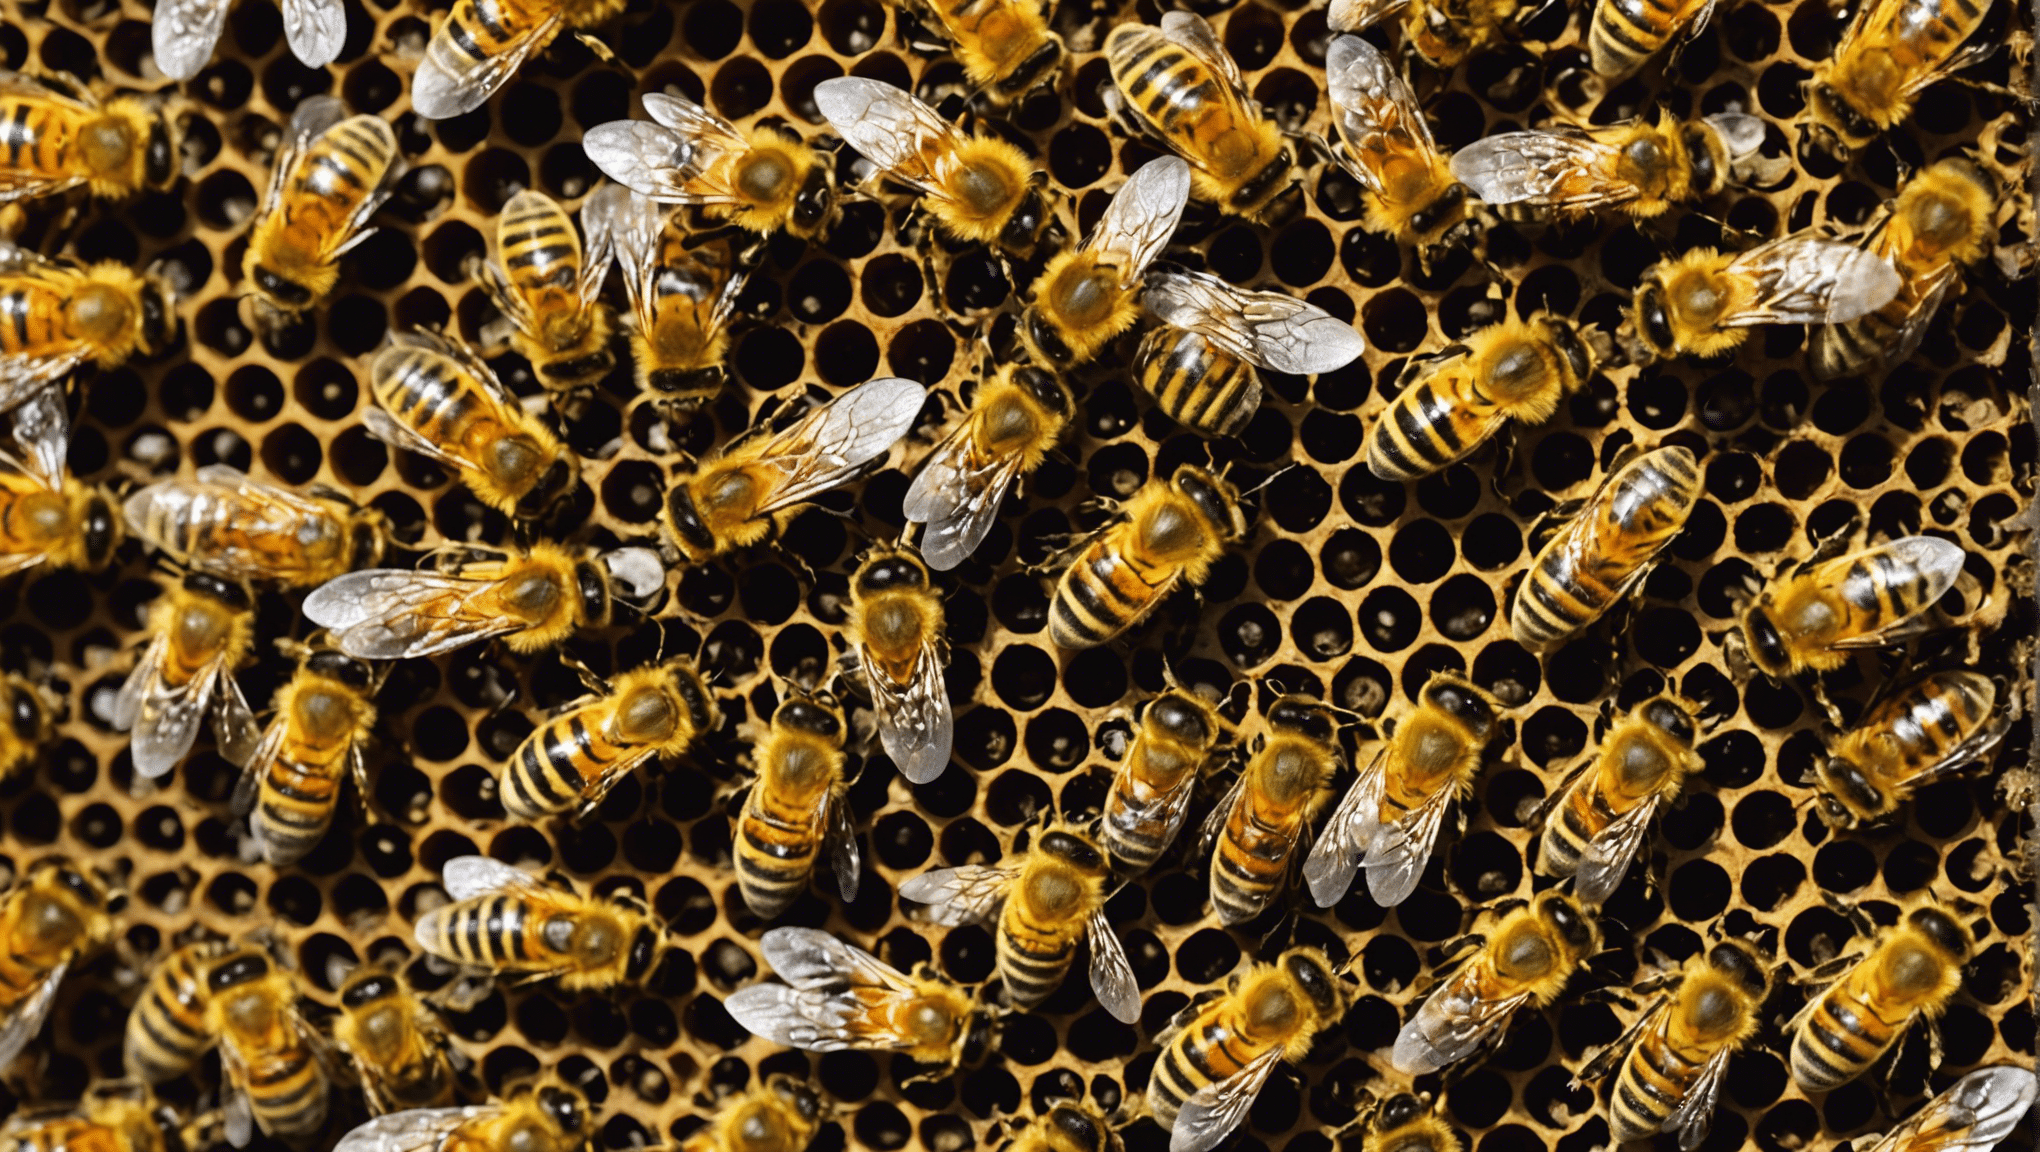 odkryj kluczowe znaczenie pszczół w zachowaniu różnorodności biologicznej i powody, dla których są one niezbędne dla naszego ekosystemu.